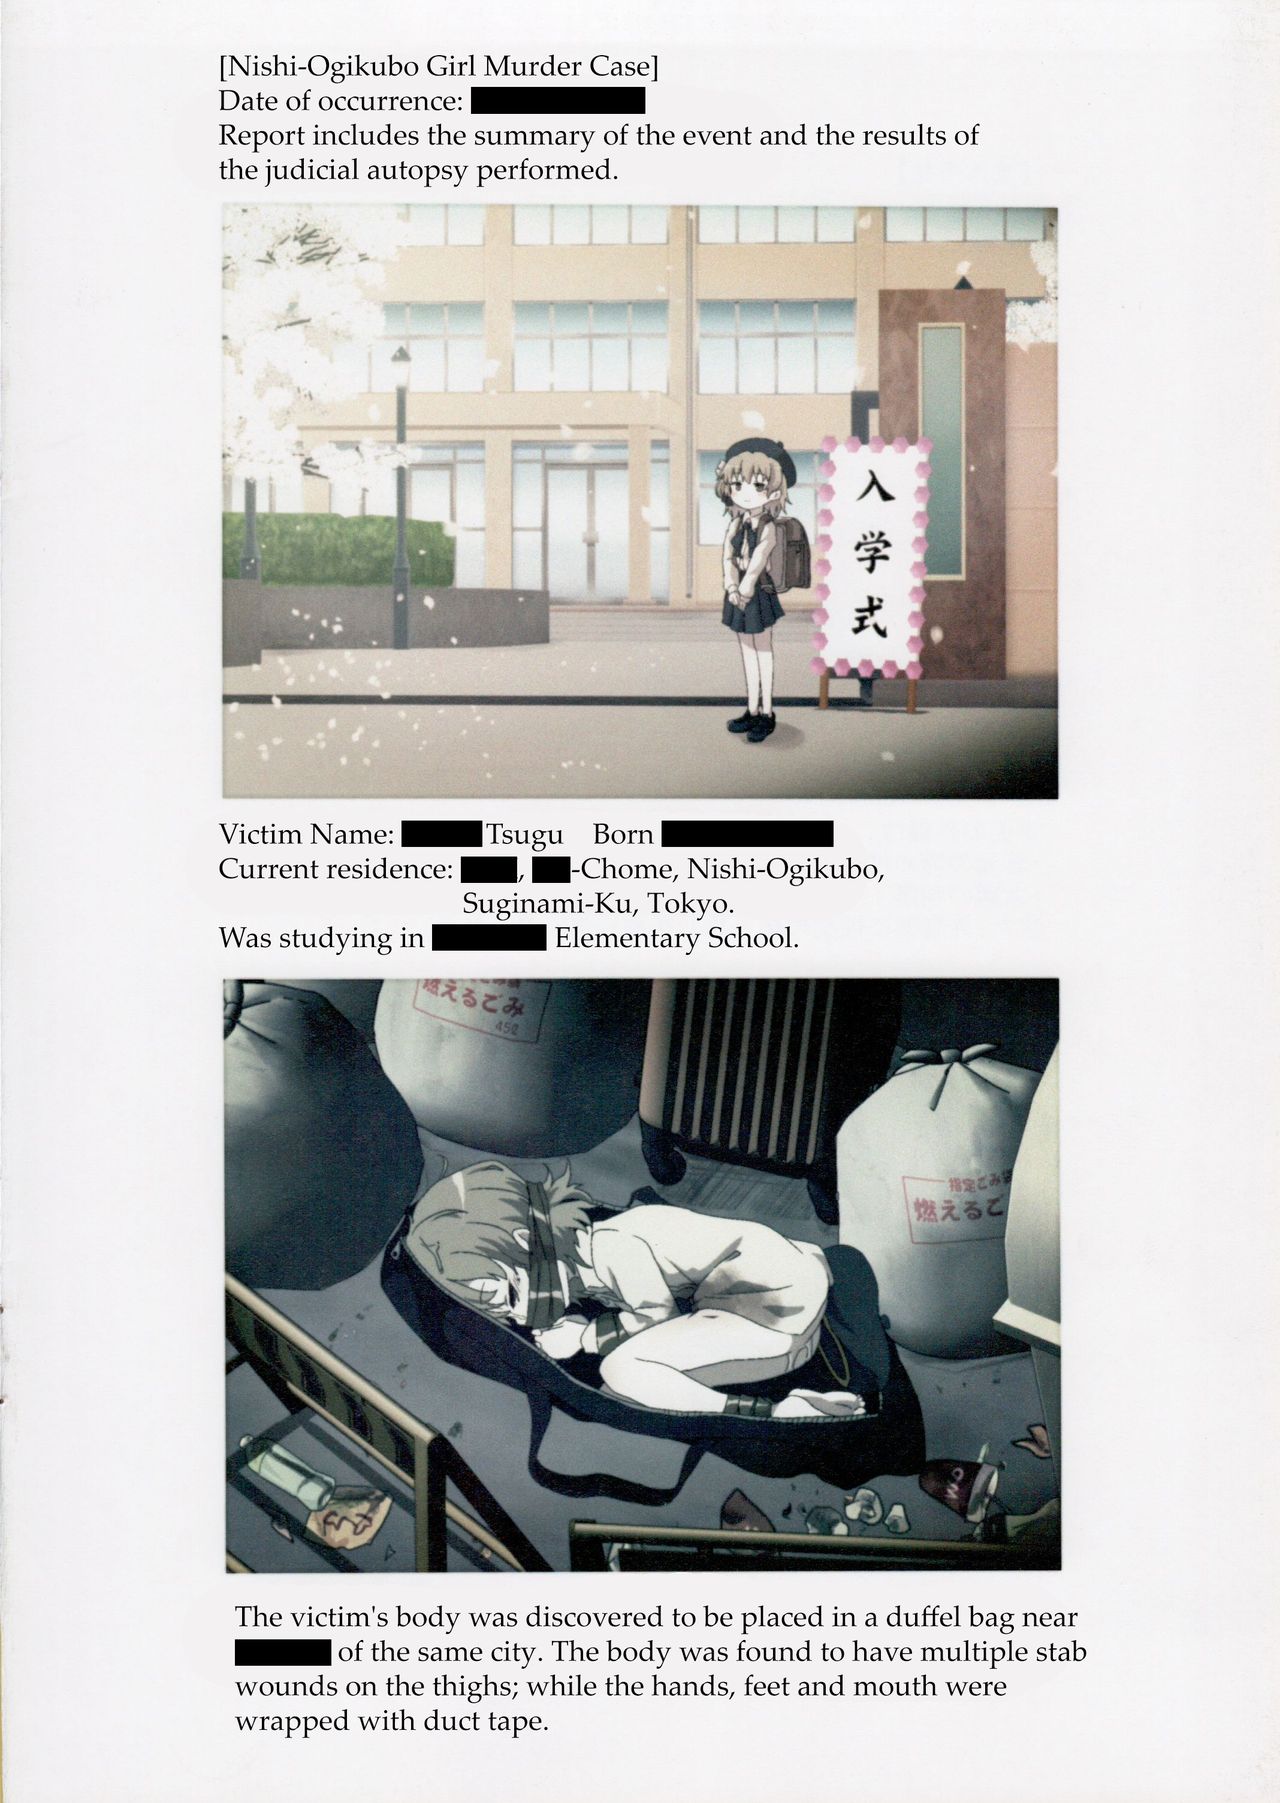 (C95) [02 (Harasaki)] Nishiogikubo Shoujo Satsugai Jiken Shihou Kaibou Kiroku | Nishi-Ogikubo Girl Murder Case Judicial Autopsy Report (Hatoba Tsugu) [English] page 3 full